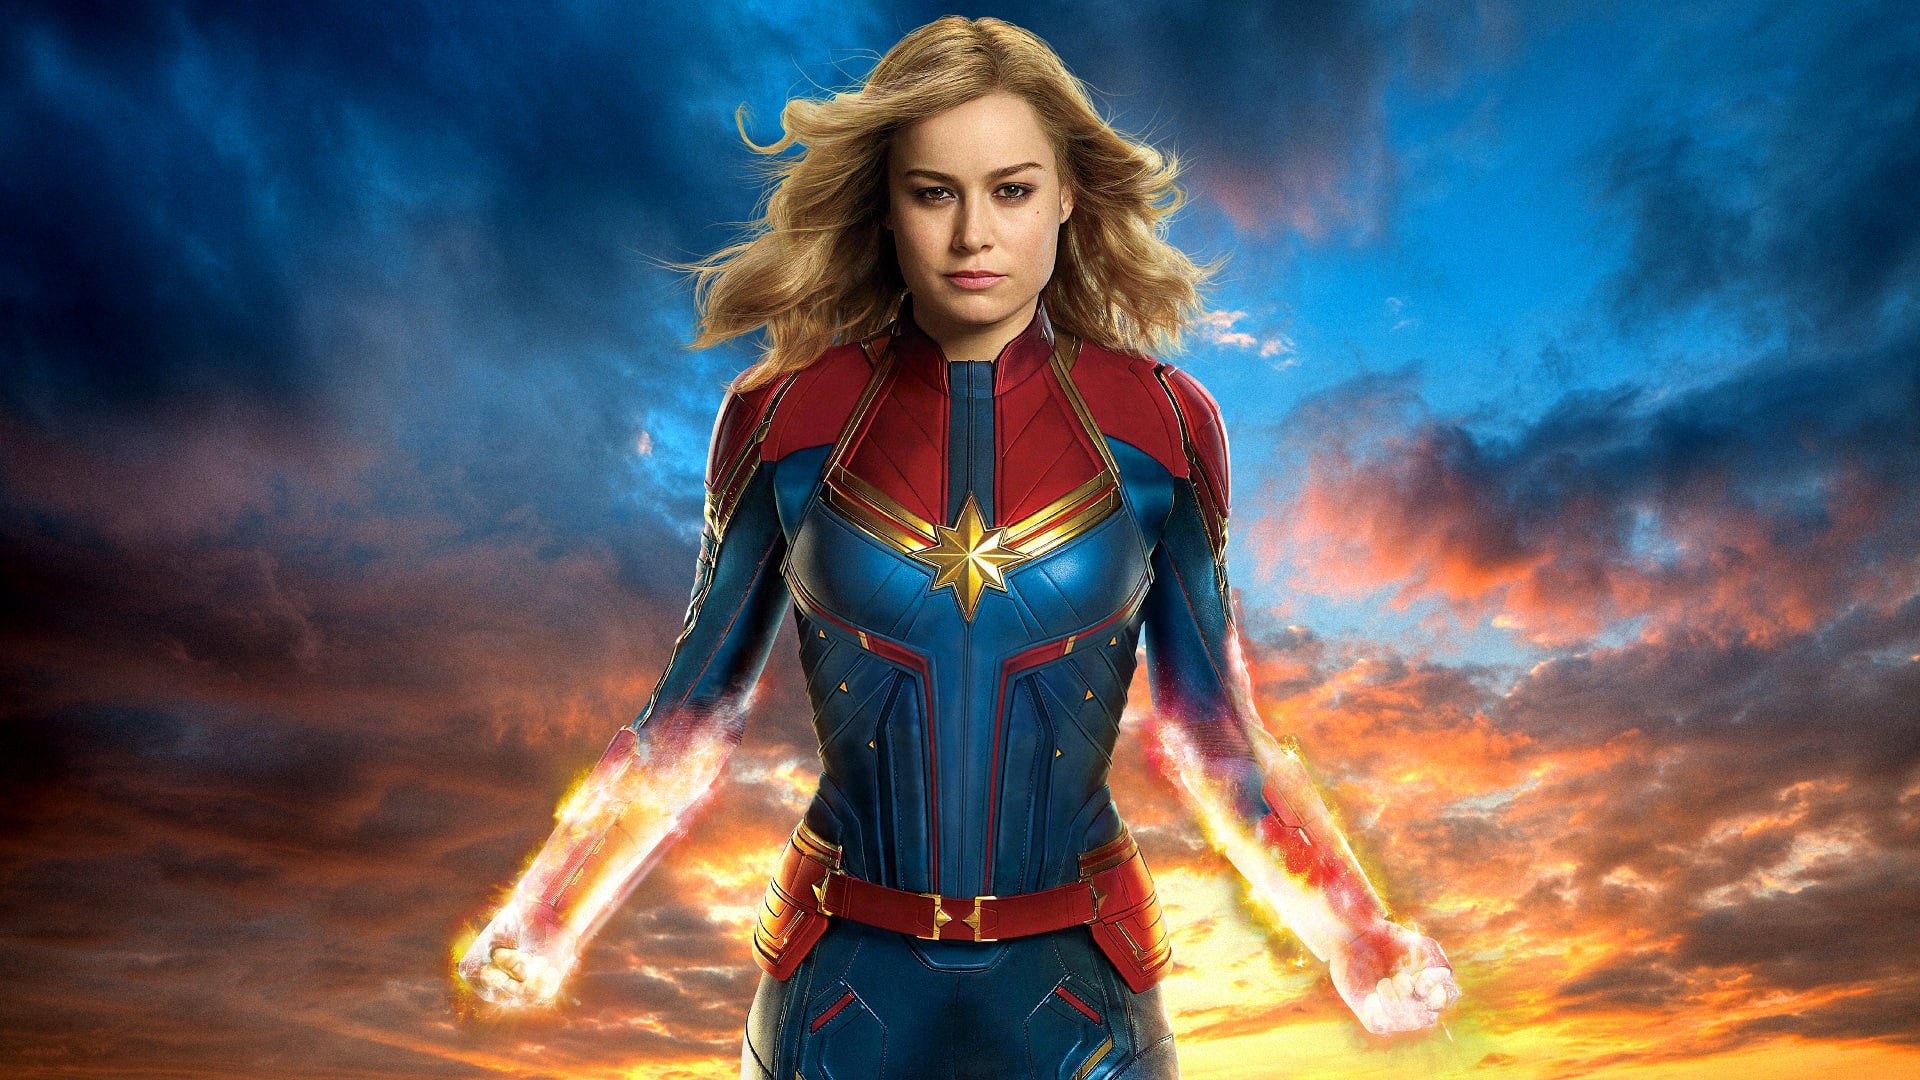 Capitã Marvel | O filme comparado aos quadrinhos